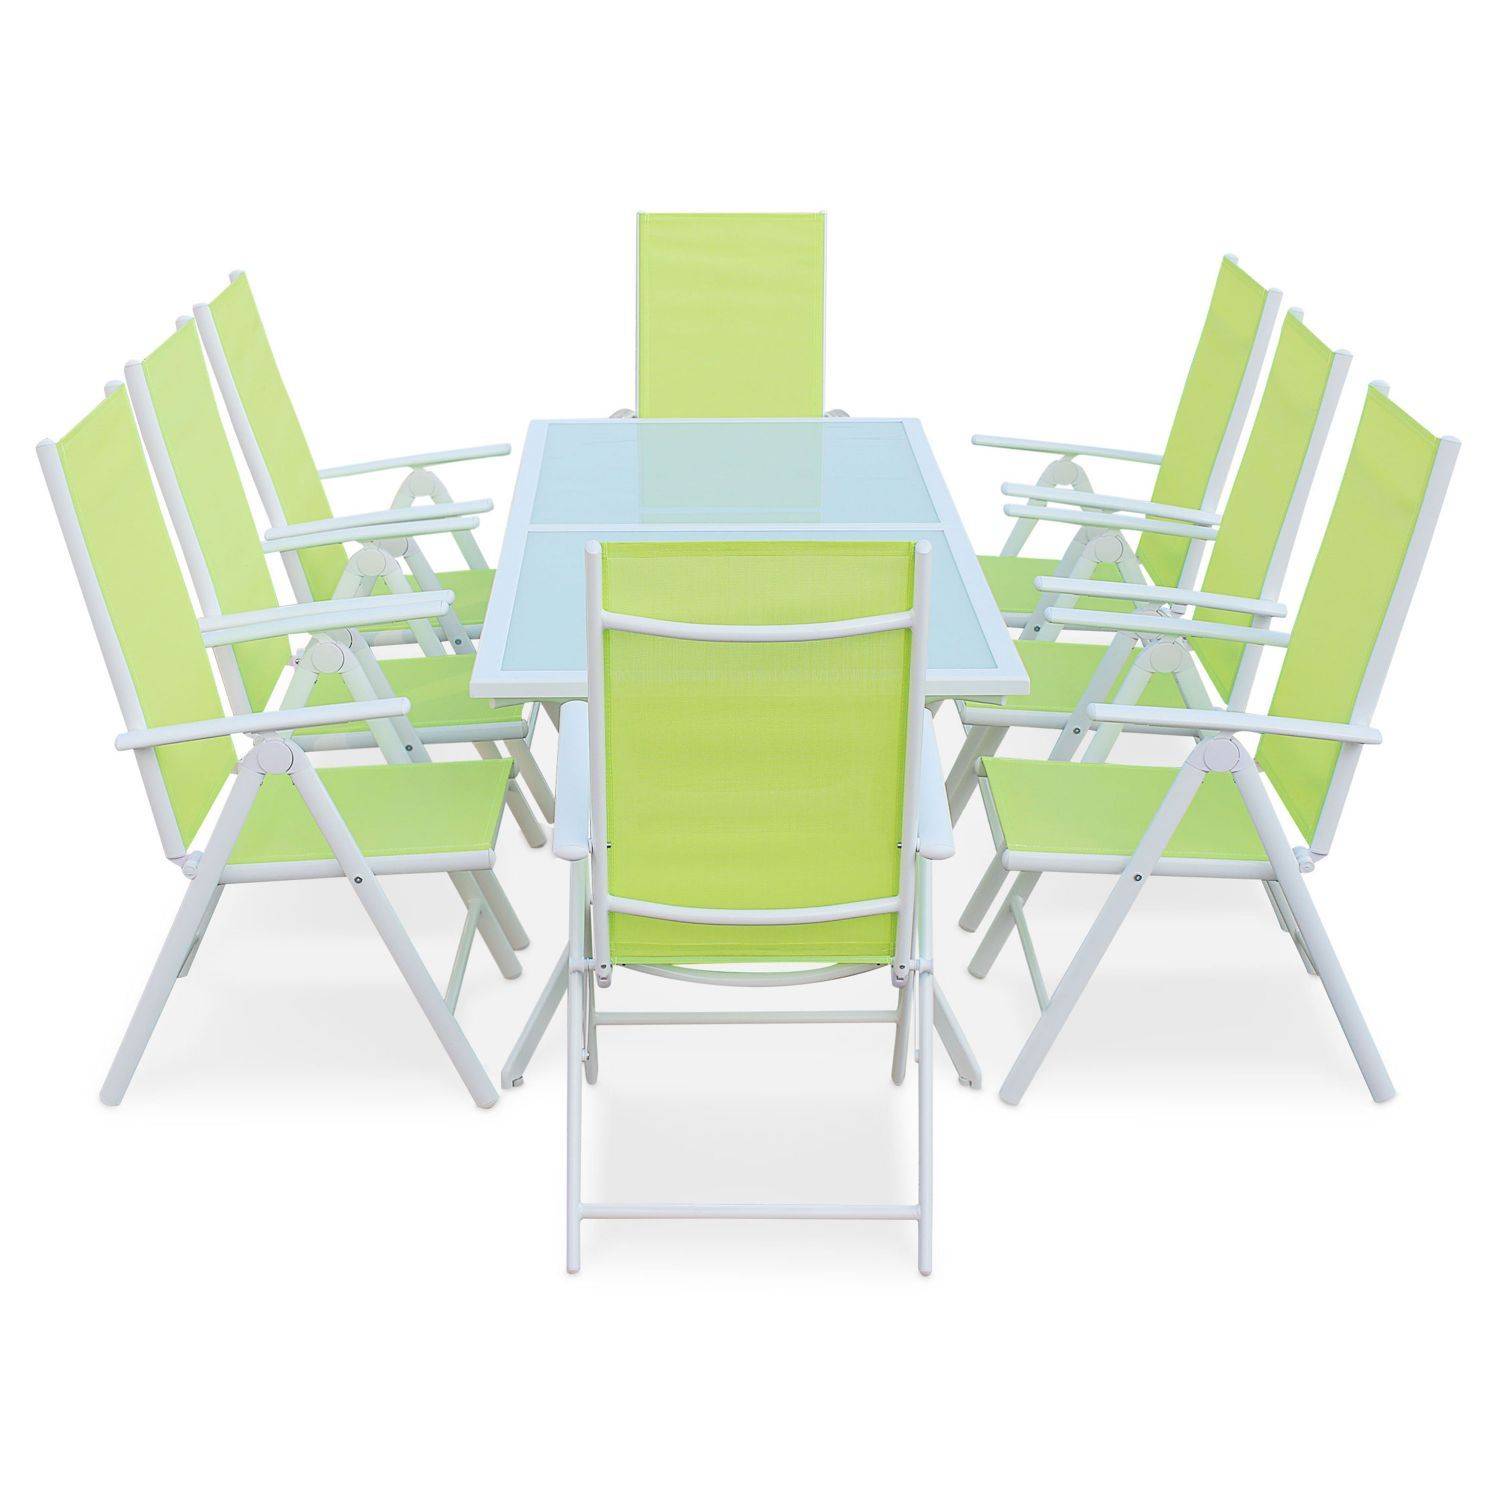 Gartengarnitur aus Aluminium und Textilene - Naevia - Weiß, Apfelgrün - 8 Sitze - 1 großer rechteckiger Tisch, 8 Klappstühle Photo2